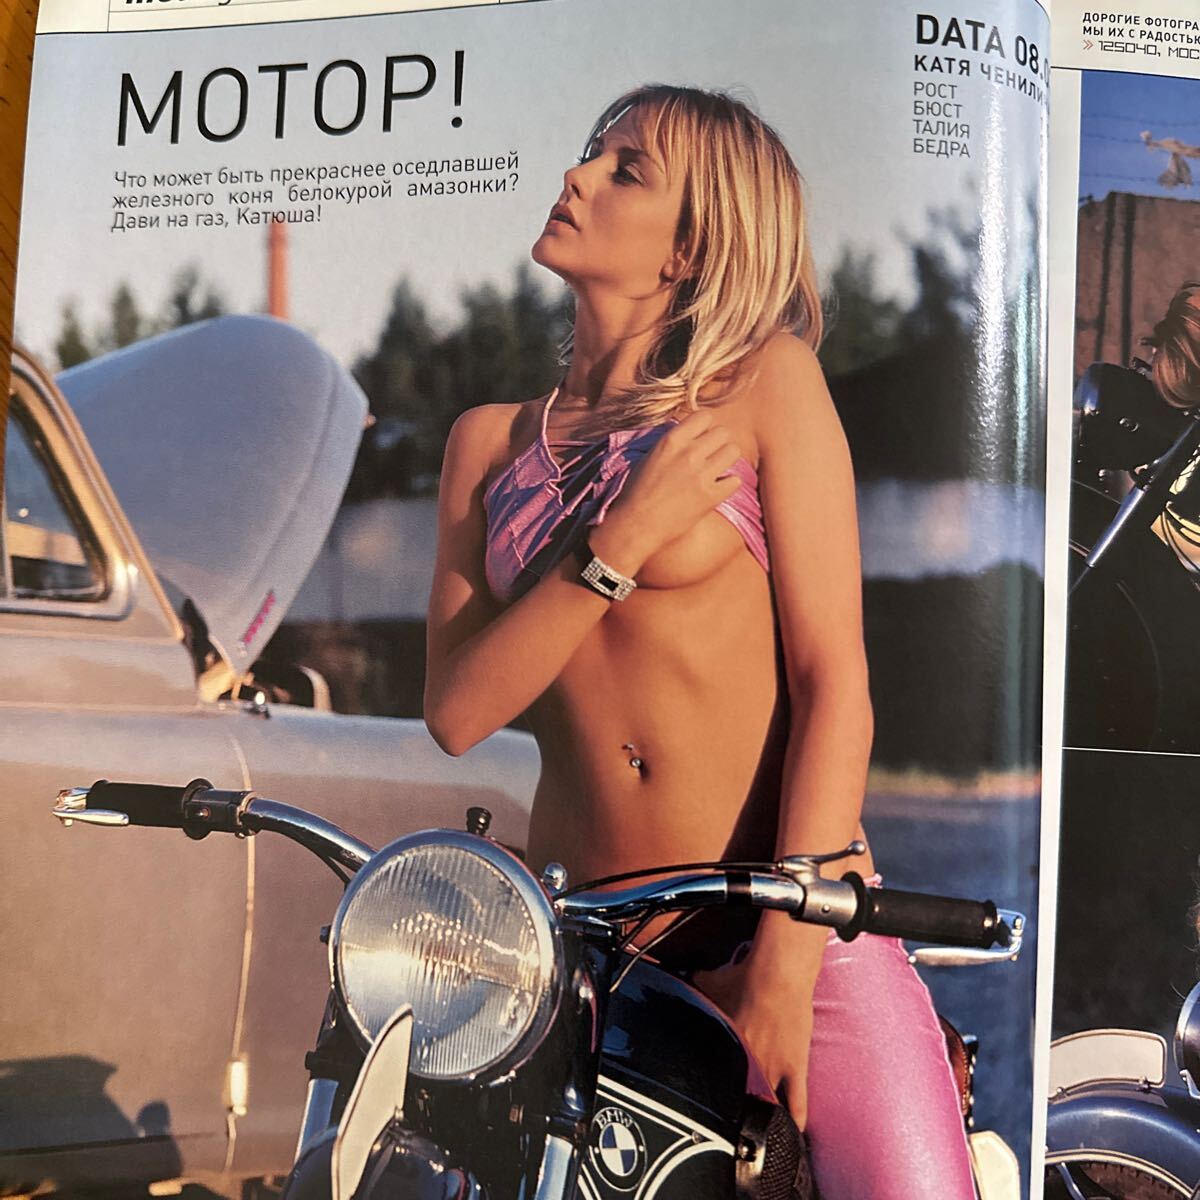 426 PLAYBOY 海外版 ロシア版 2003 セクシー写真 広告 ファッションの画像3